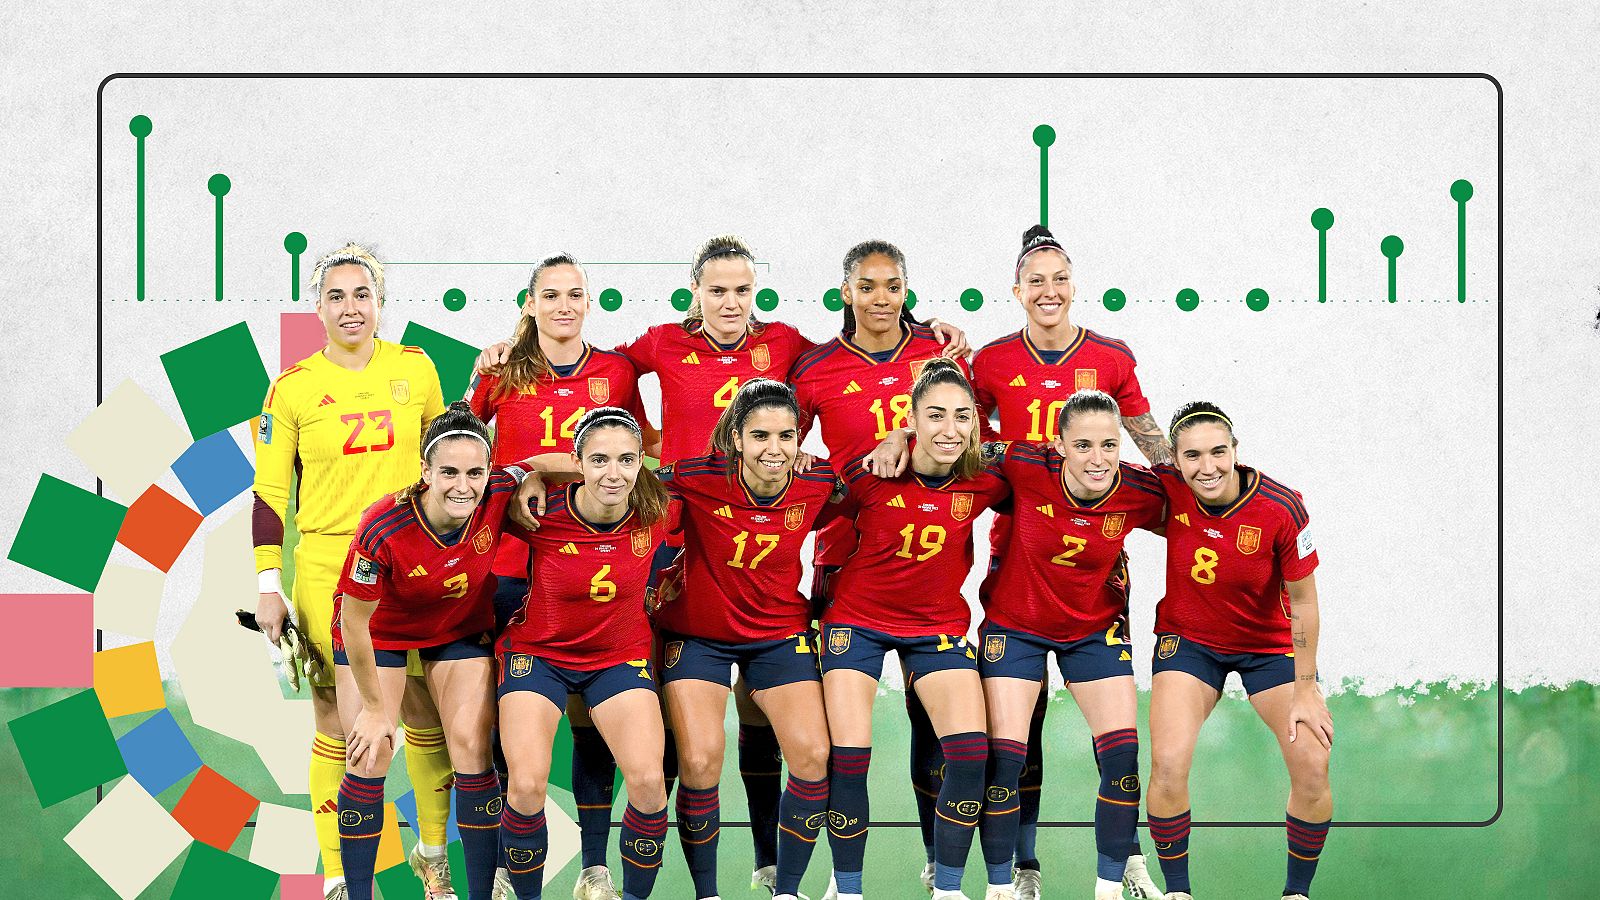 La selección española es el quinto equipo que gana el Mundial Femenino tras Estados Unidos, Alemania, Noruega y Japón.